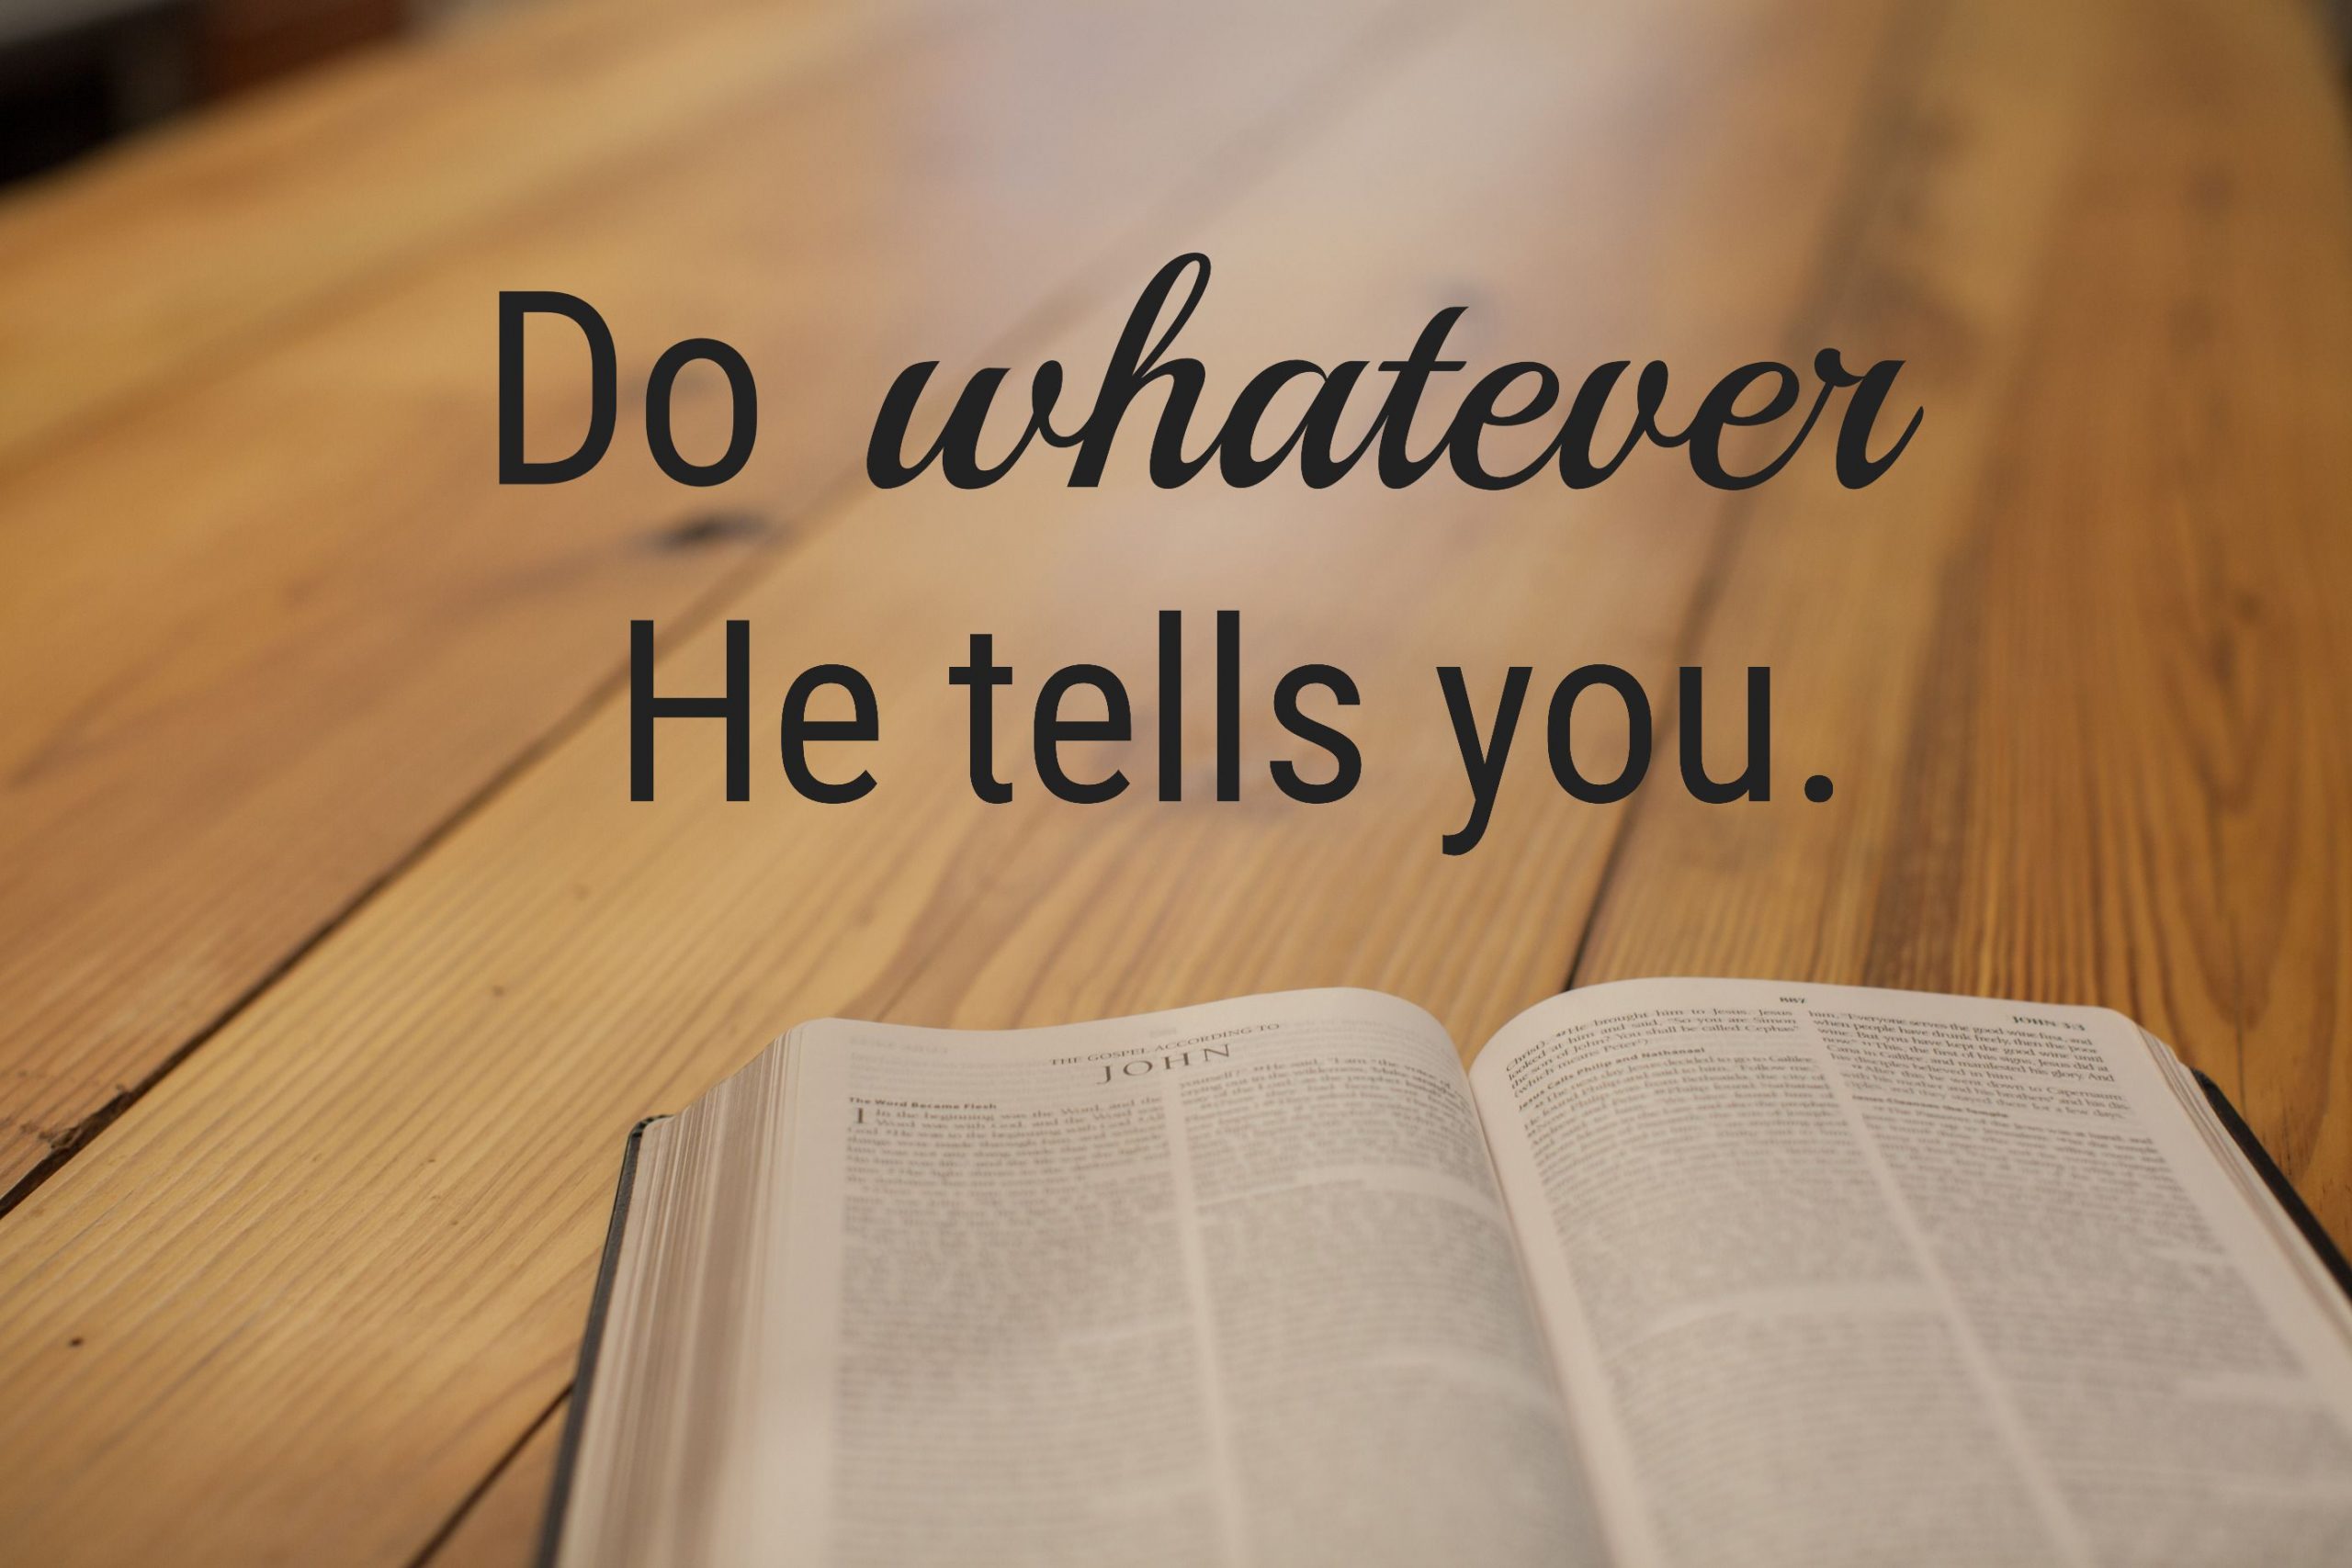 Do whatever He tells you.